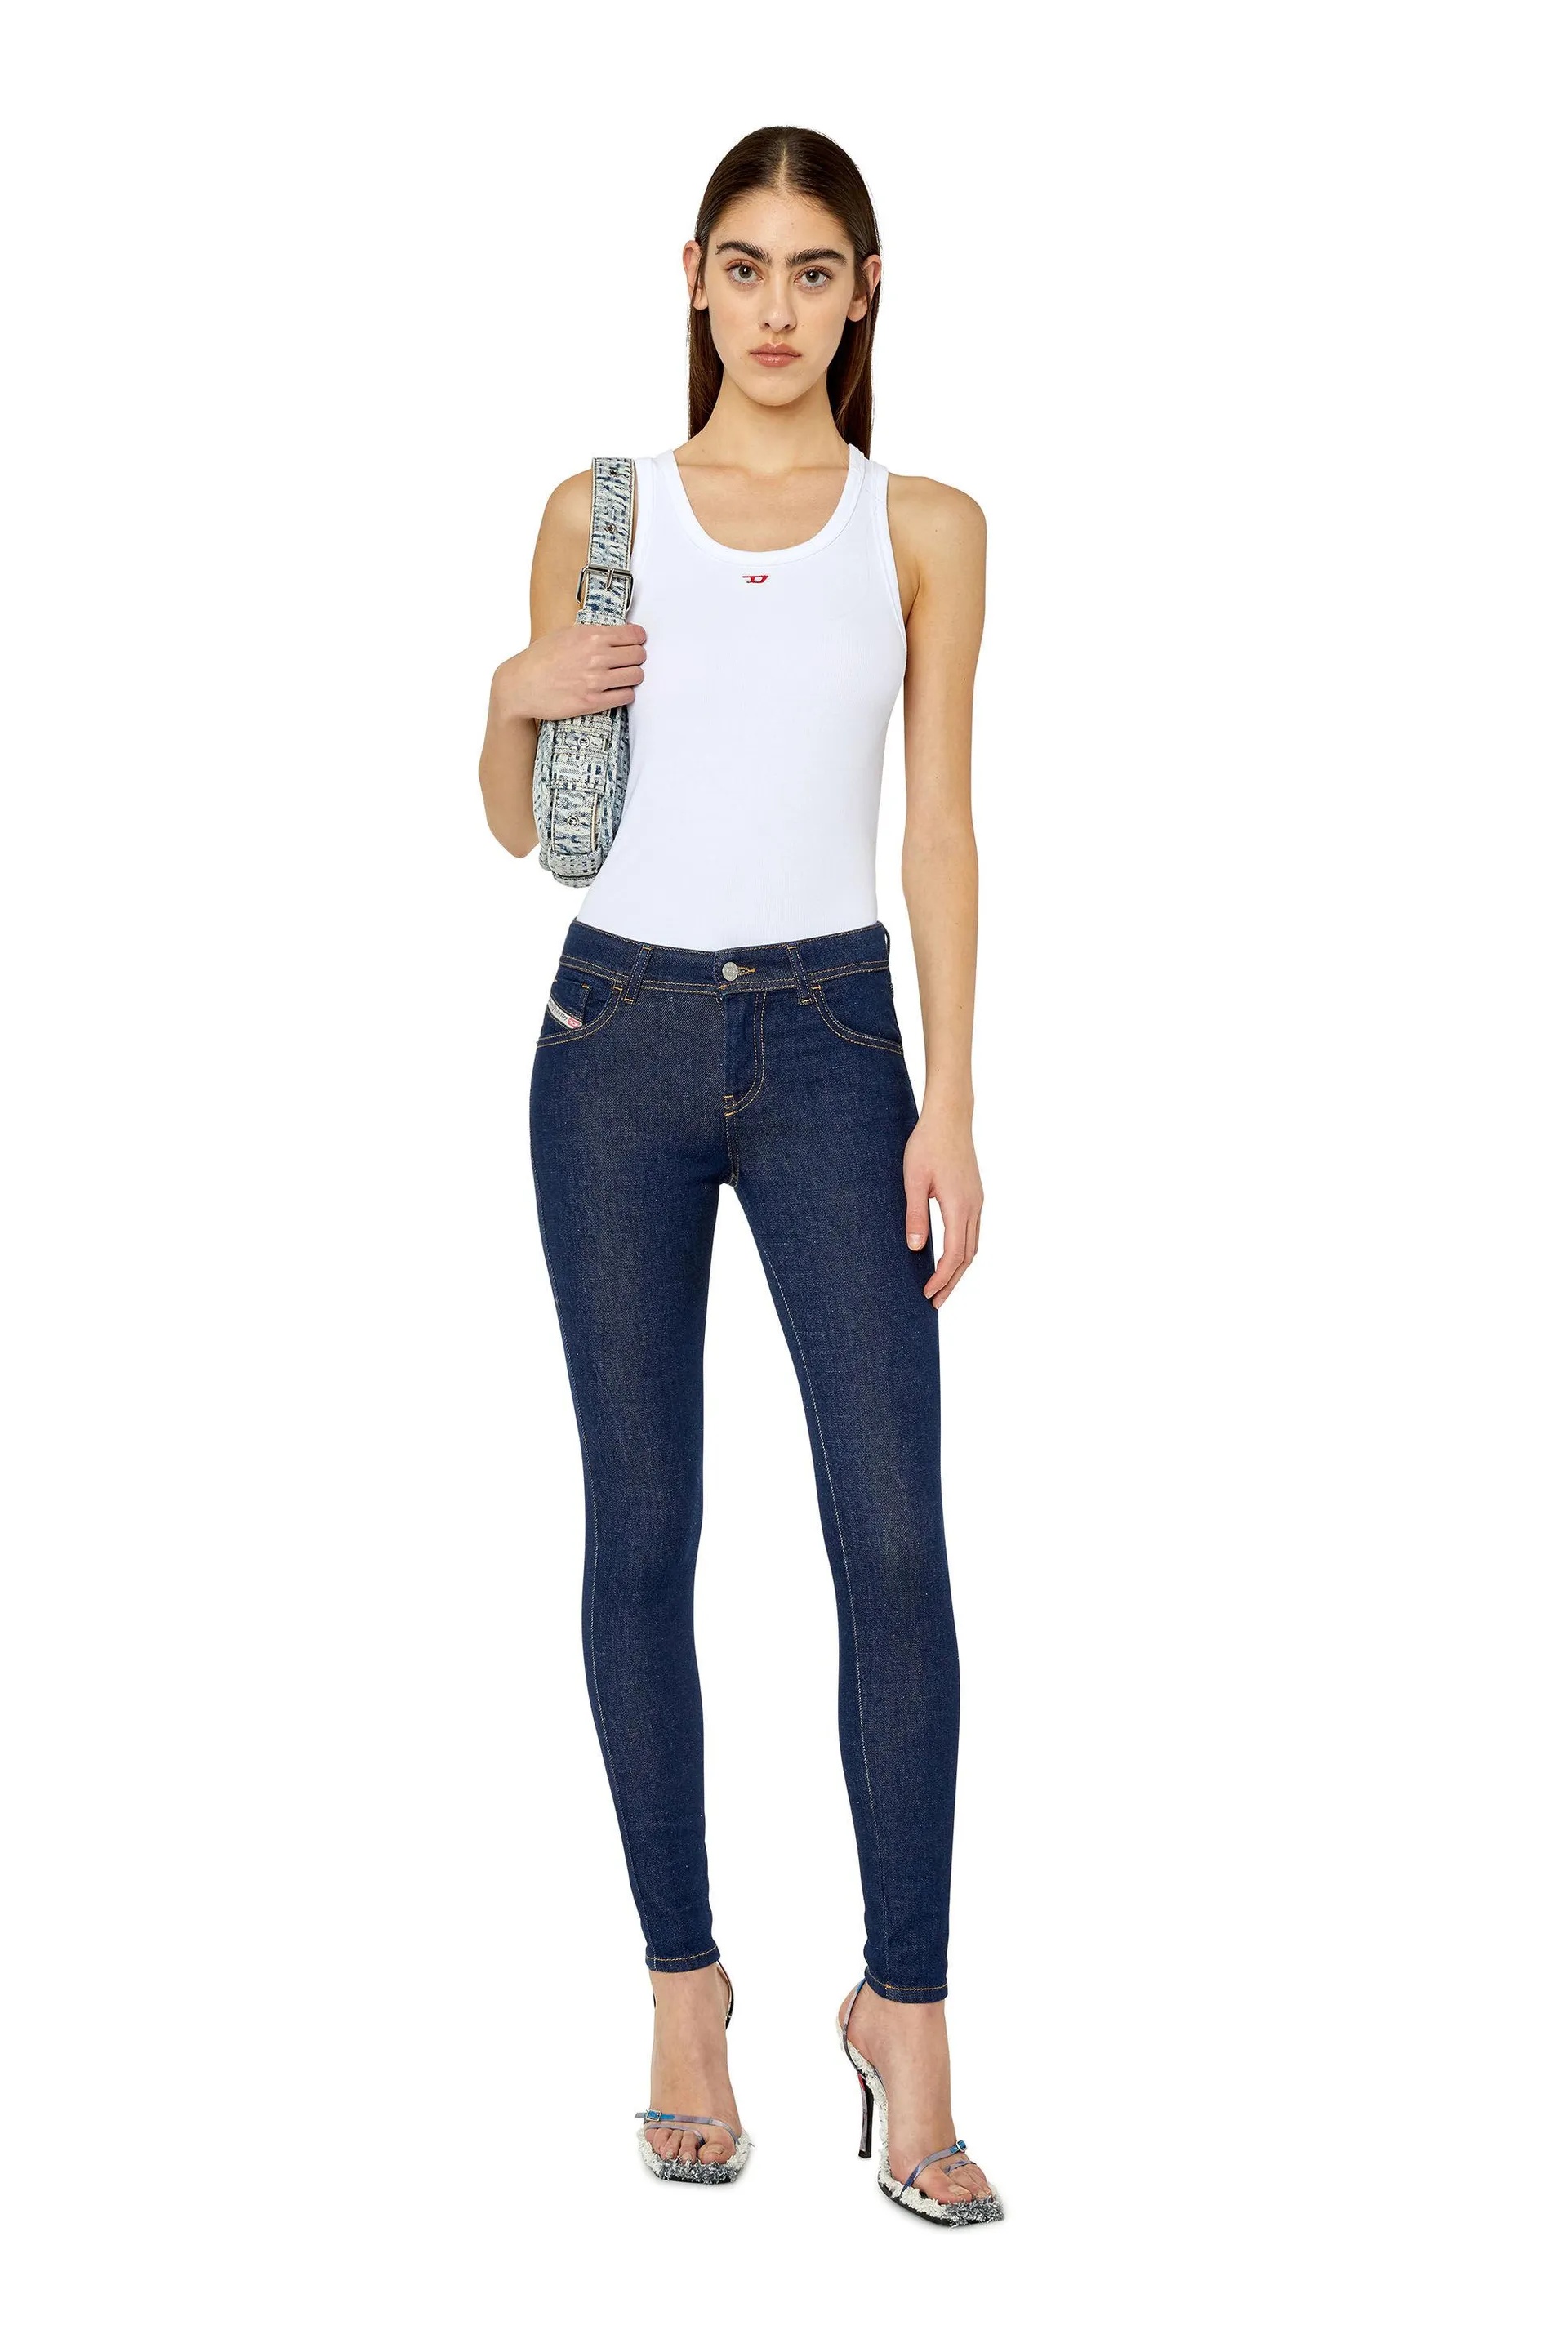 2017 slandy z9c18 super skinny jeans